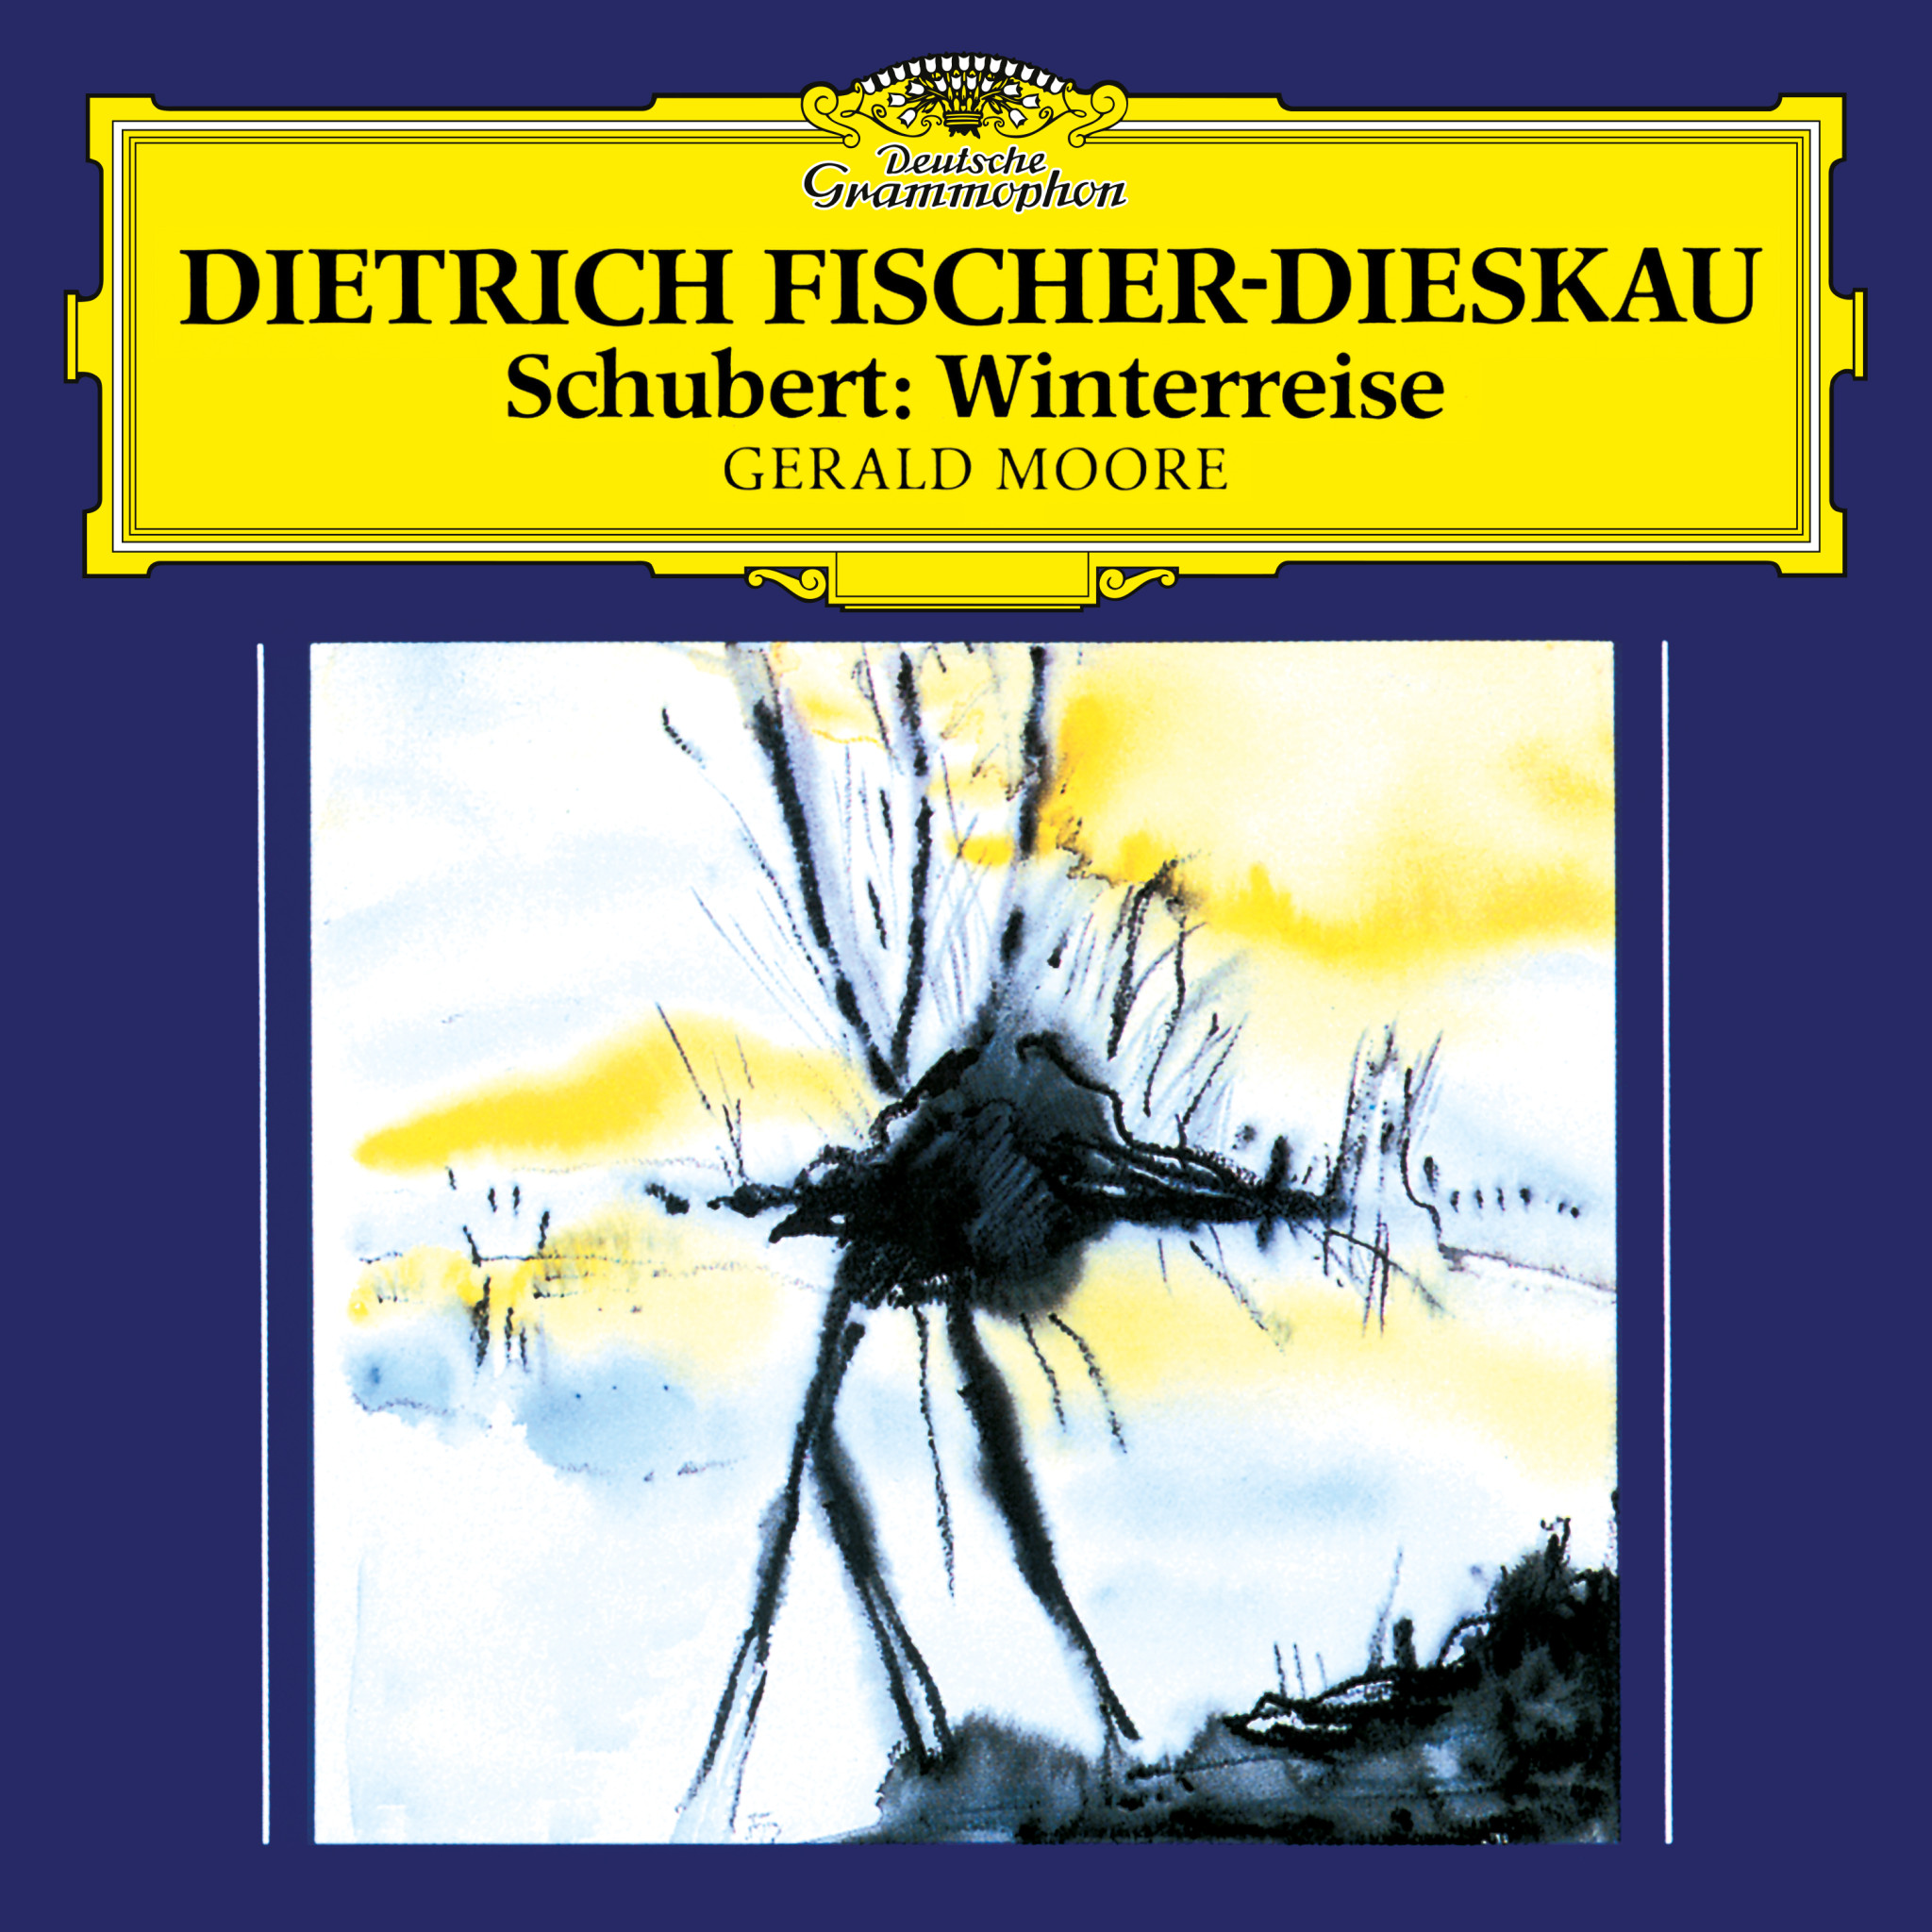 Dietrich Fischer-Dieskau - Schubert: Winterreise